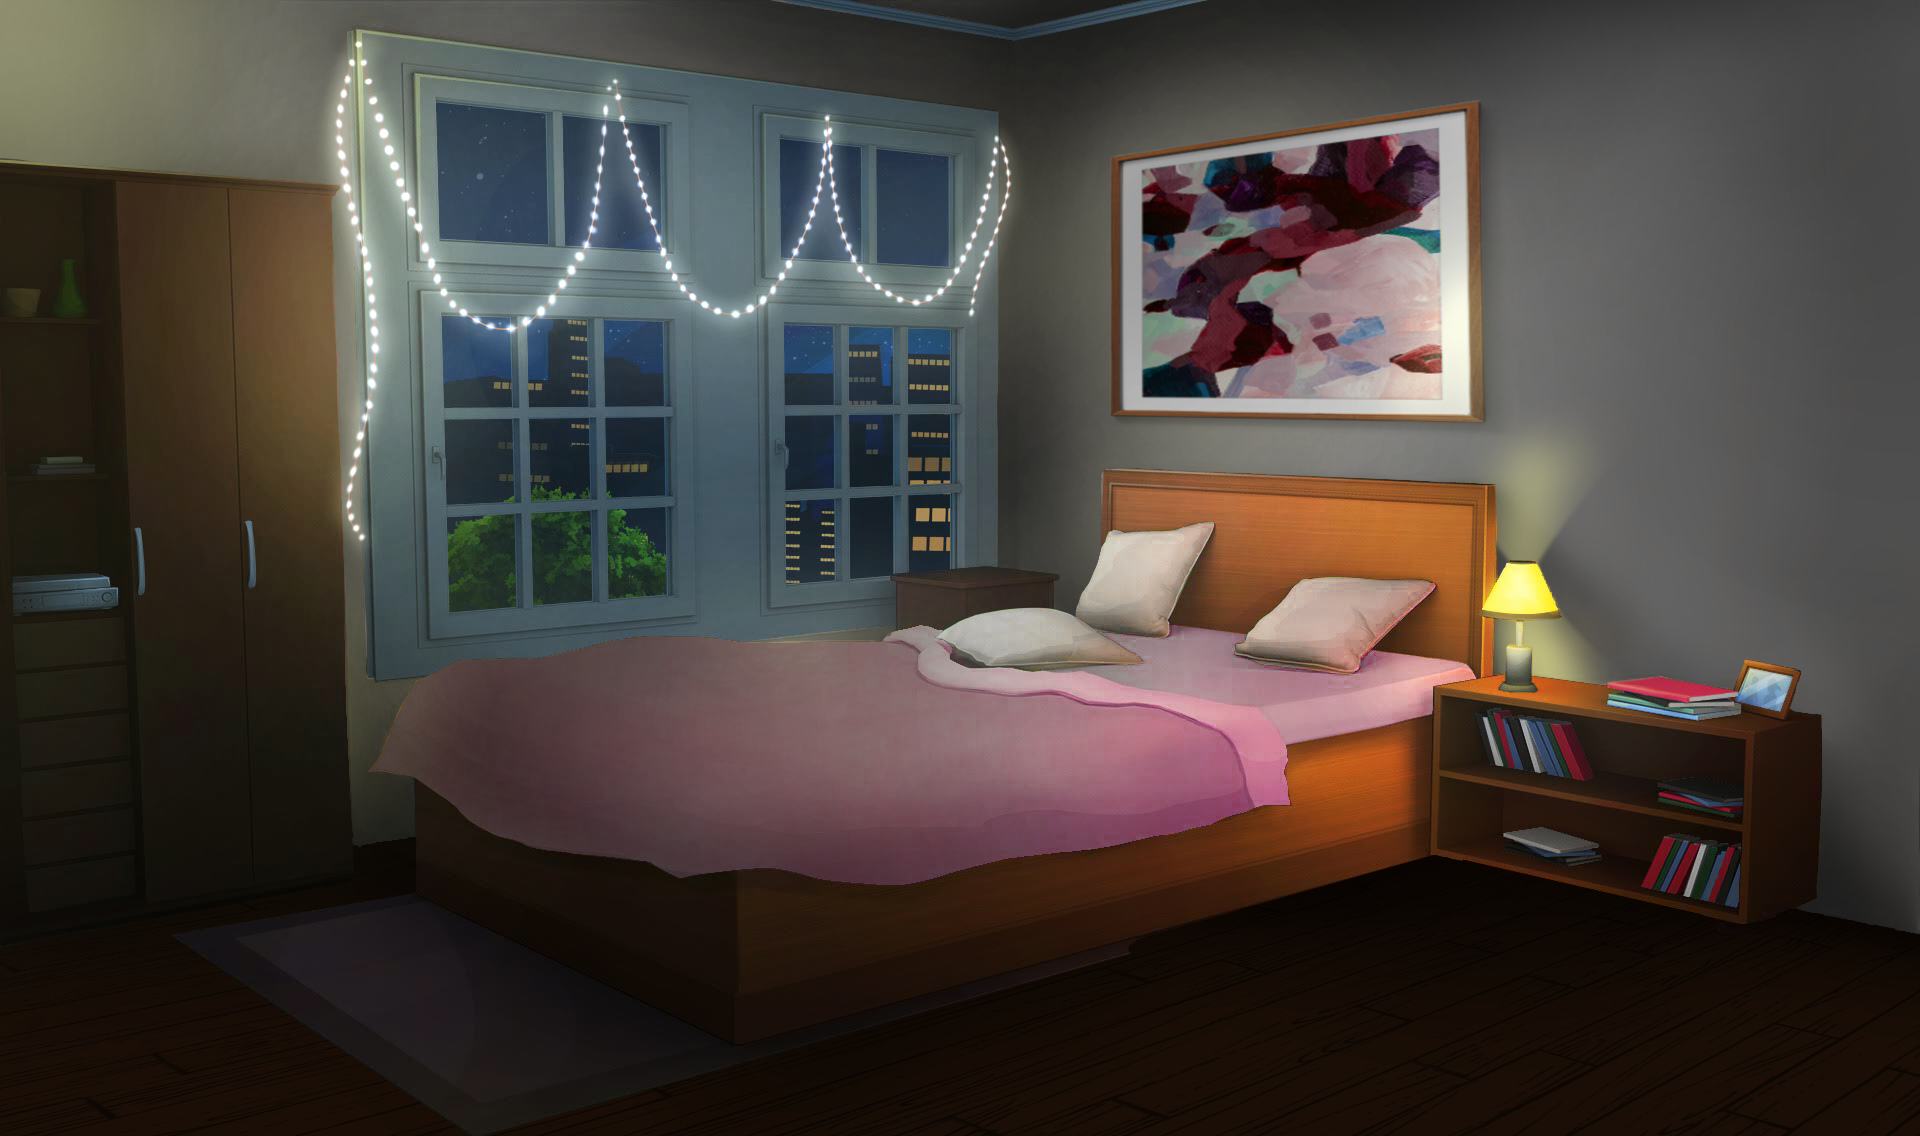 Những tấm hình nền phòng ngủ màu hồng đang là xu hướng hot nhất hiện nay. Với những họa tiết tuyệt đẹp và sáng tạo, hình nền này sẽ mang lại cảm giác ấm cúng và ngọt ngào cho không gian sống của bạn.